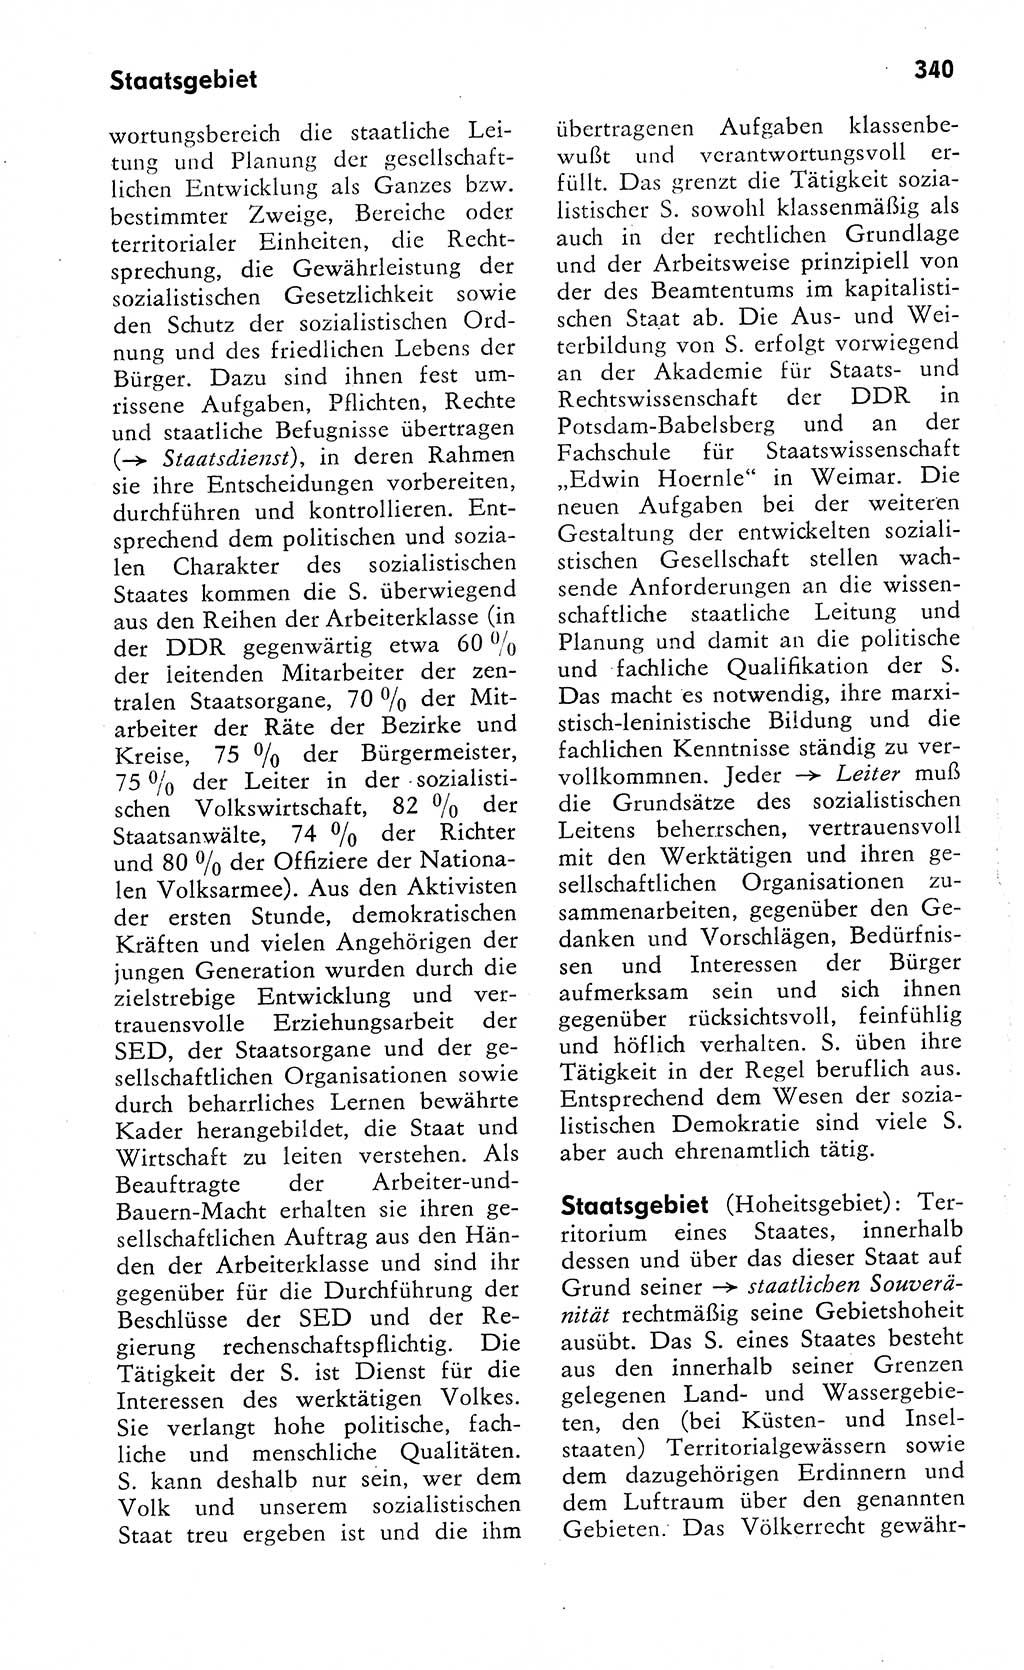 Wörterbuch zum sozialistischen Staat [Deutsche Demokratische Republik (DDR)] 1974, Seite 340 (Wb. soz. St. DDR 1974, S. 340)